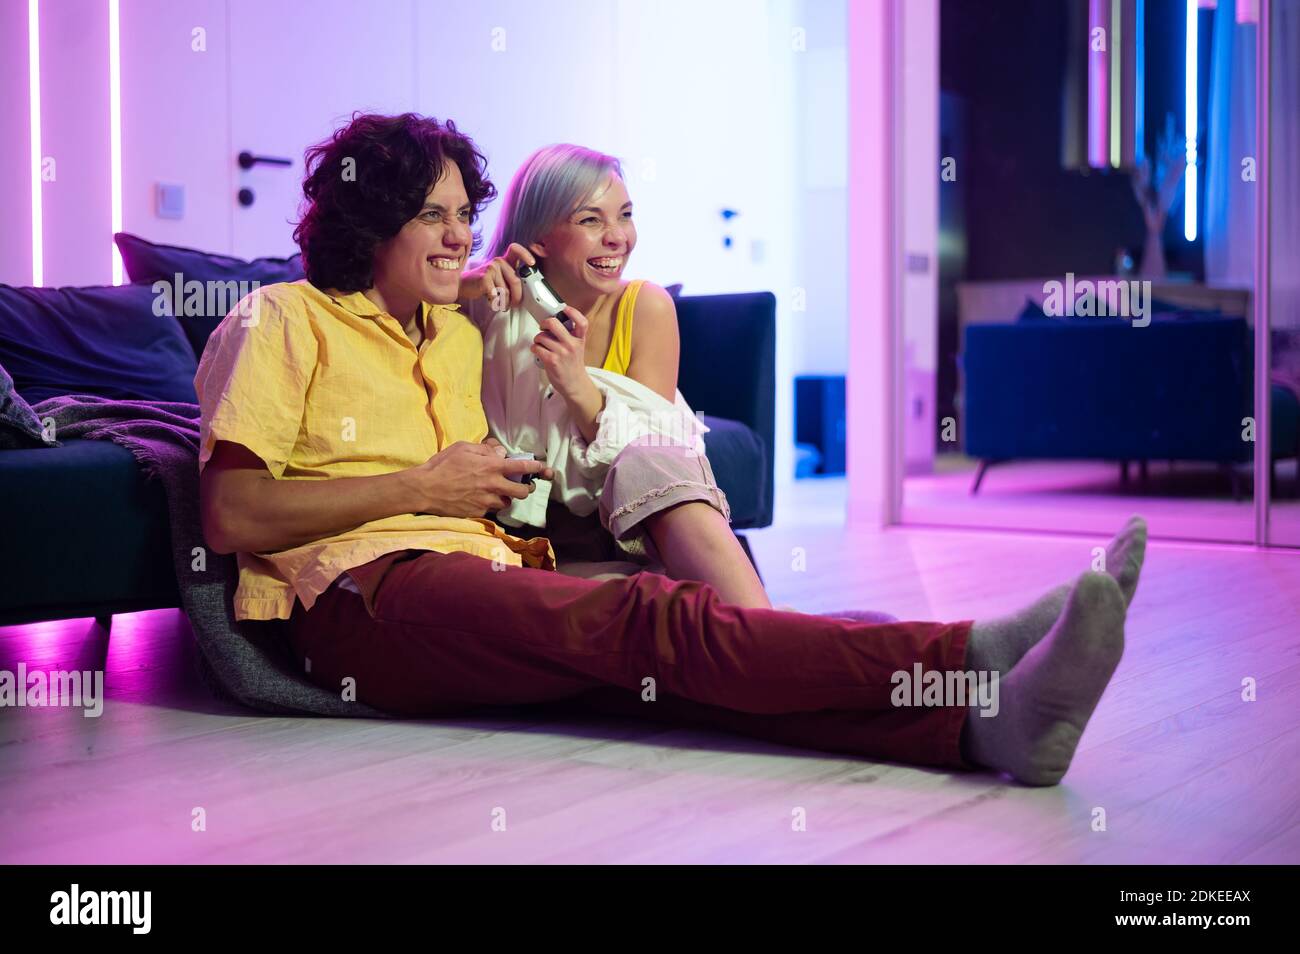 Junges Paar spielen Videospiele, während auf dem Wohnzimmer Boden mit Neonfarbe beleuchtet sitzen. Stockfoto